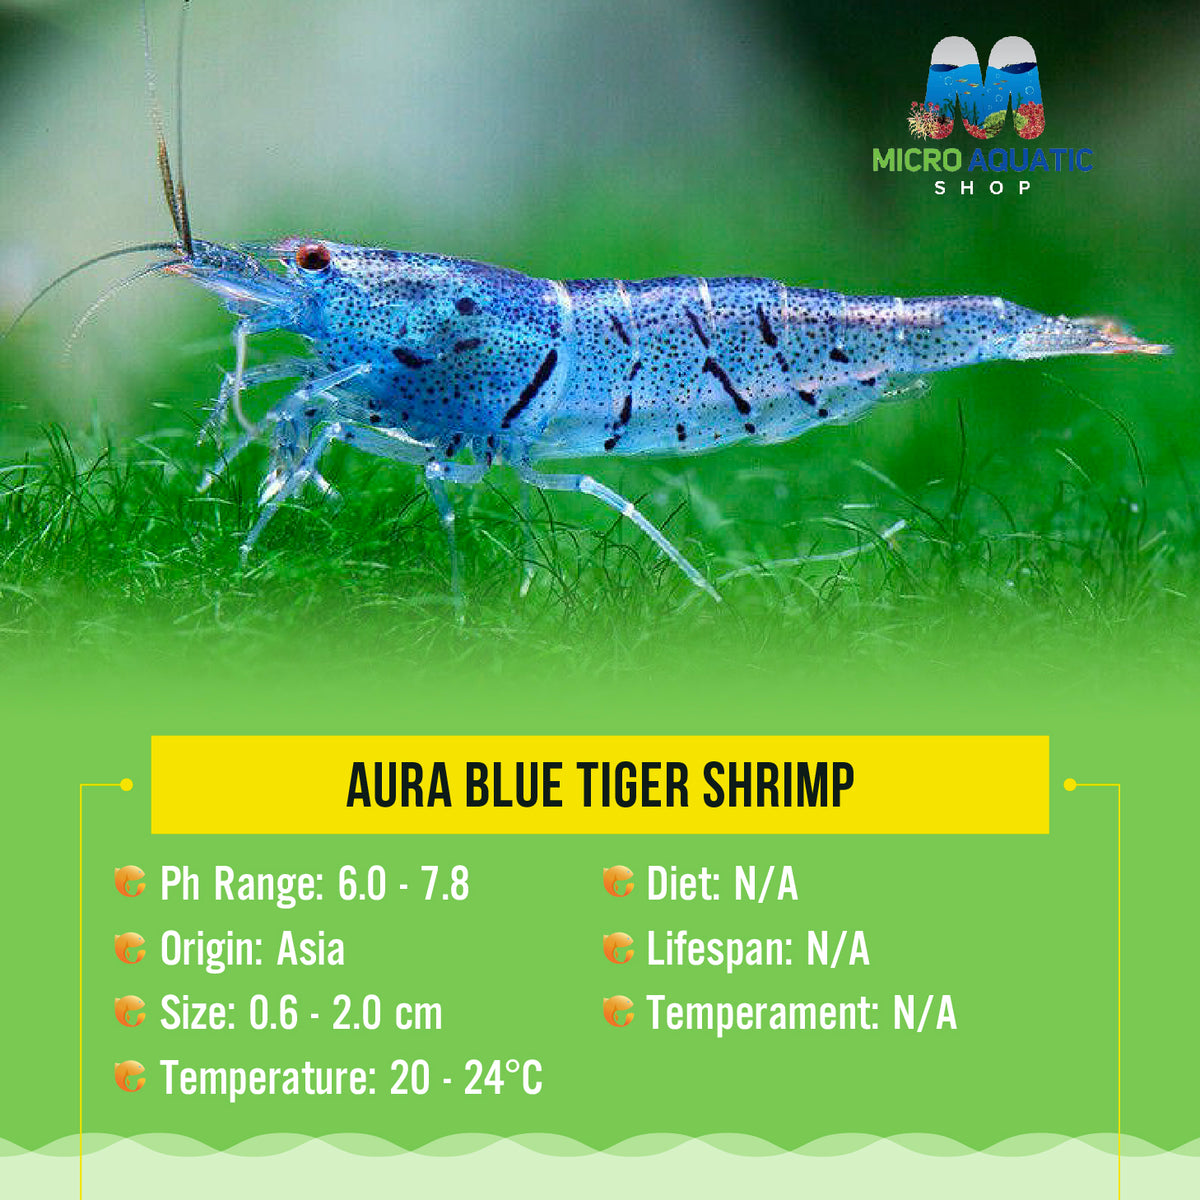 Aura Blue Tiger Shrimp